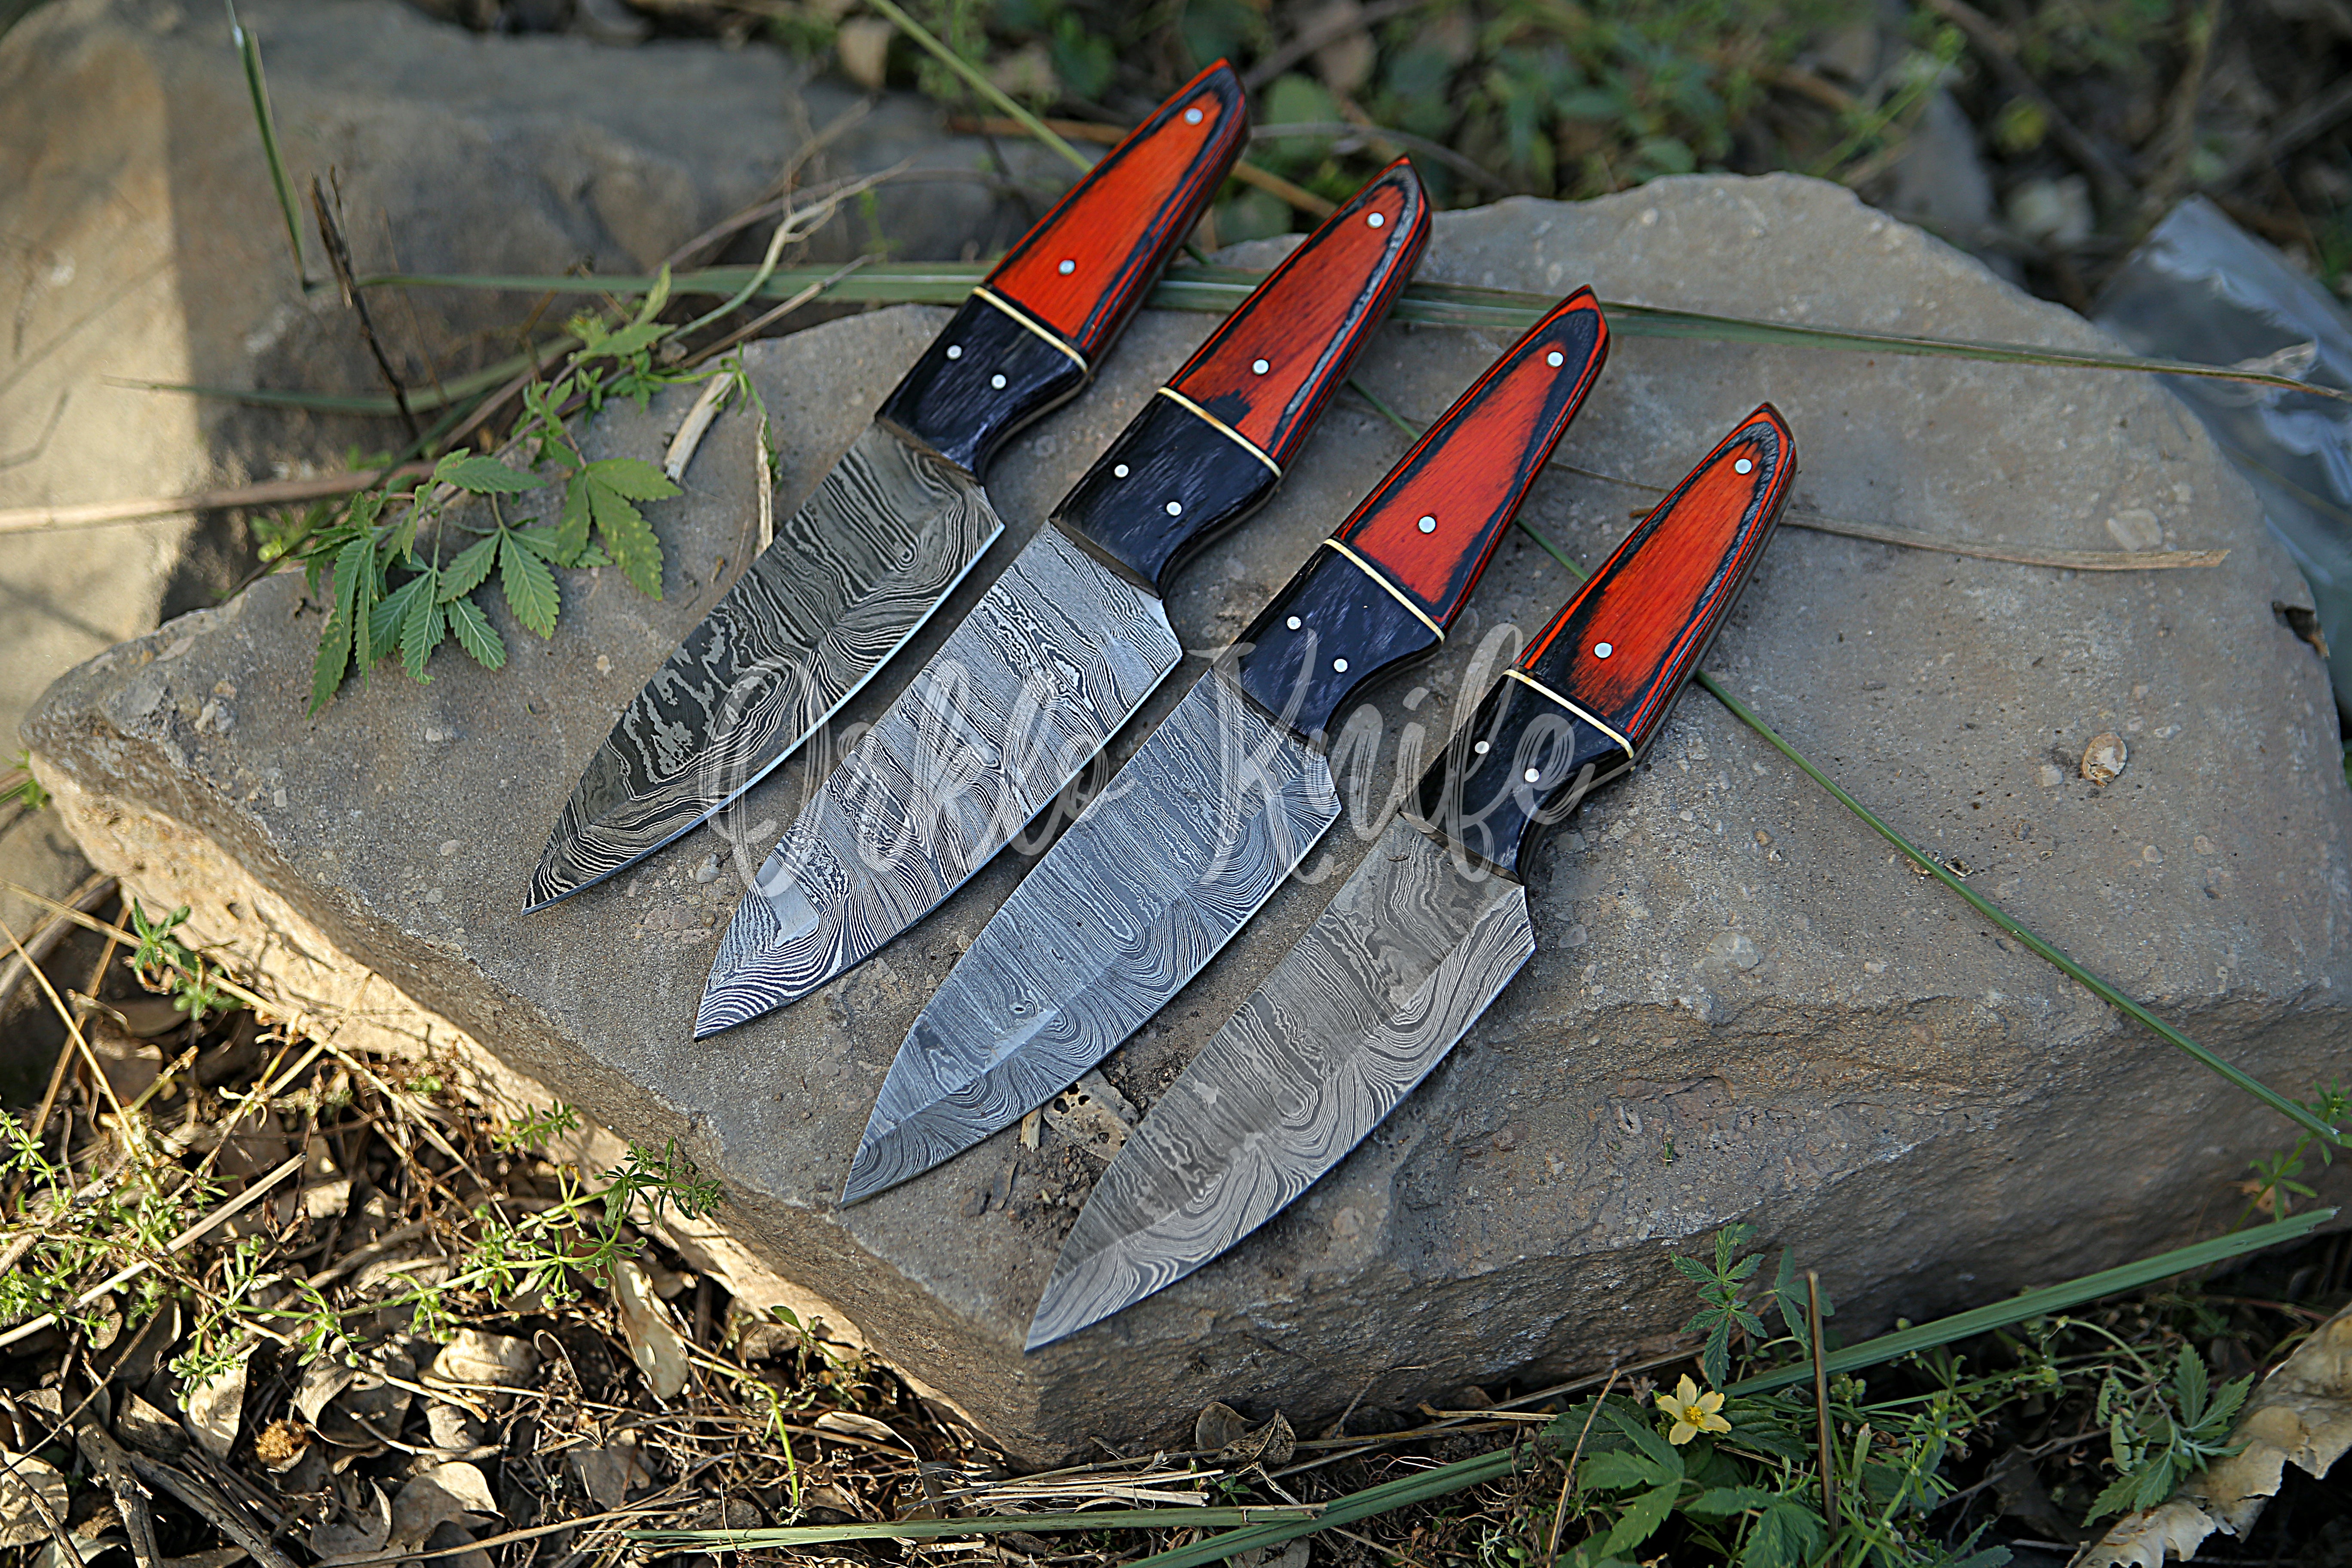 Damascus steak knife set of 4 - Orkloknife